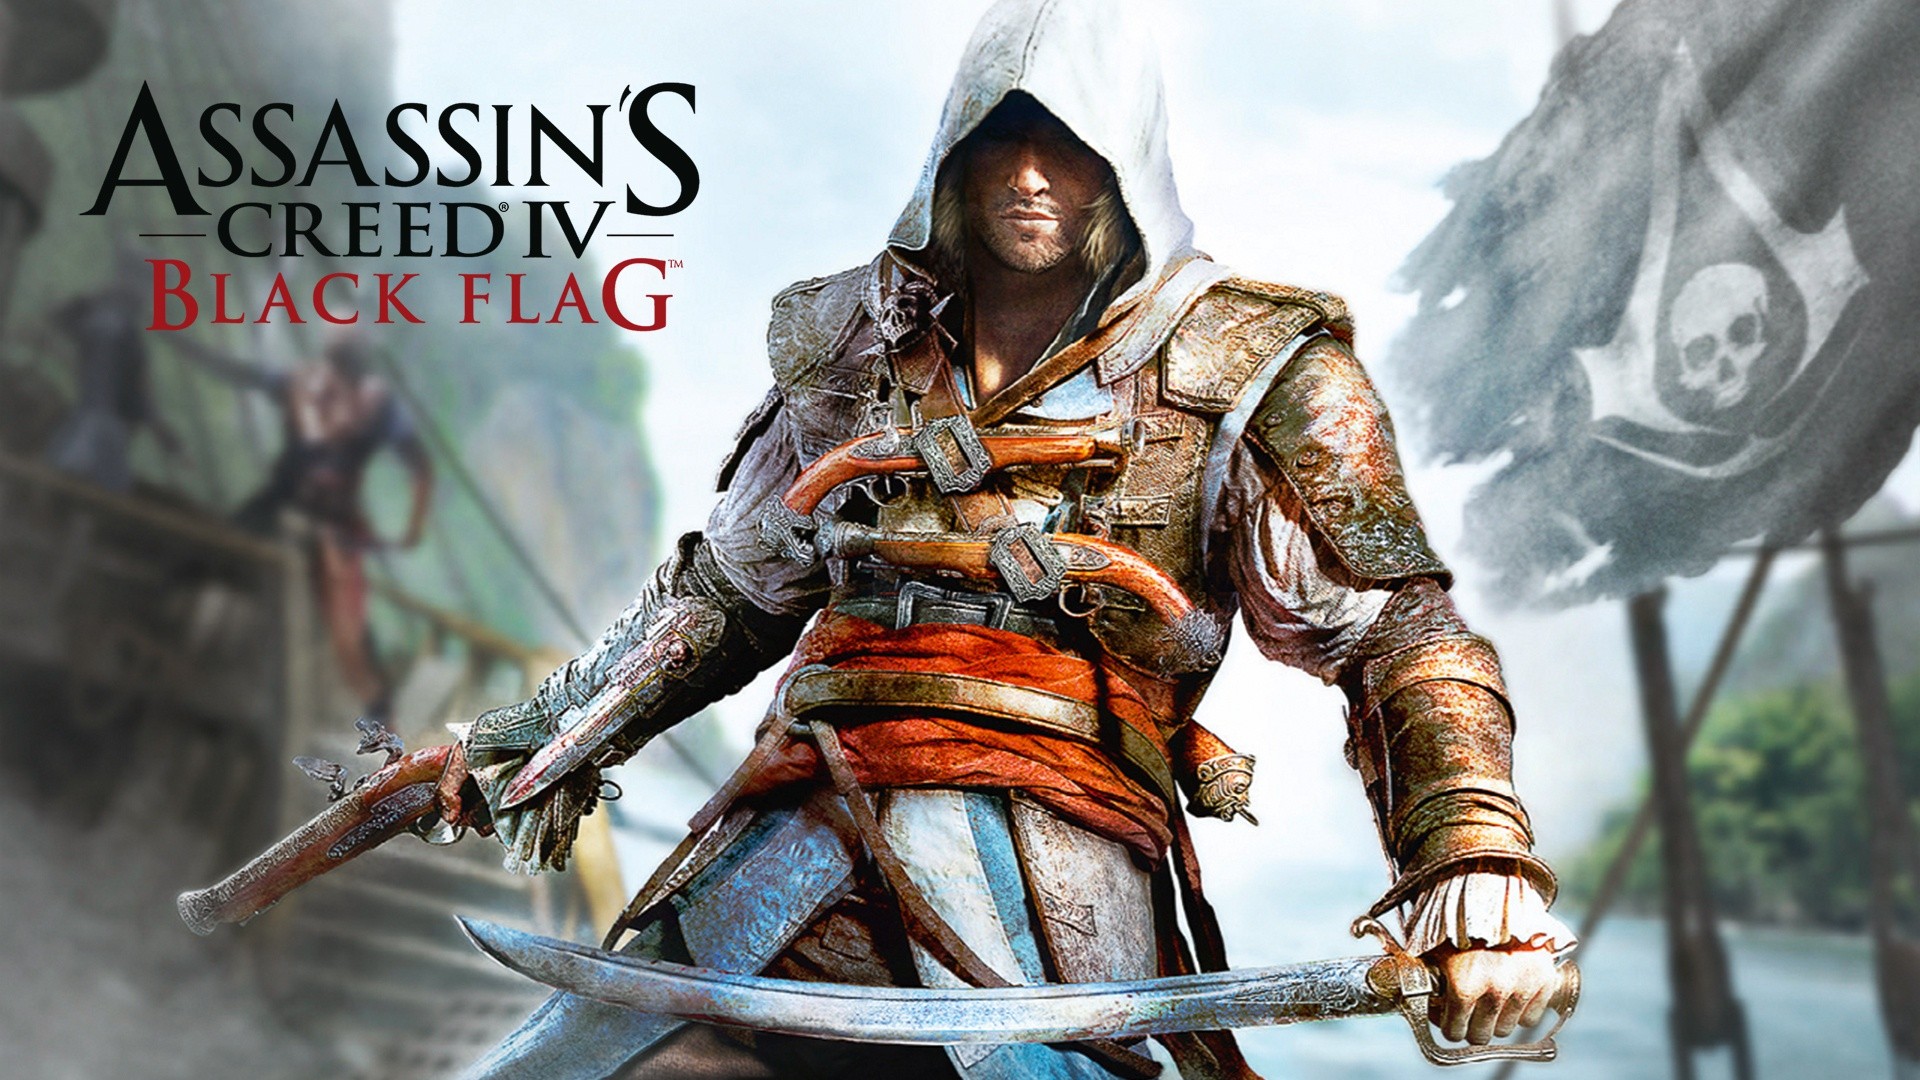 Die Anzahl der Spieler von Assassin's Creed IV: Black Flag hat in 10 Jahren über 34 Millionen Spieler erreicht!